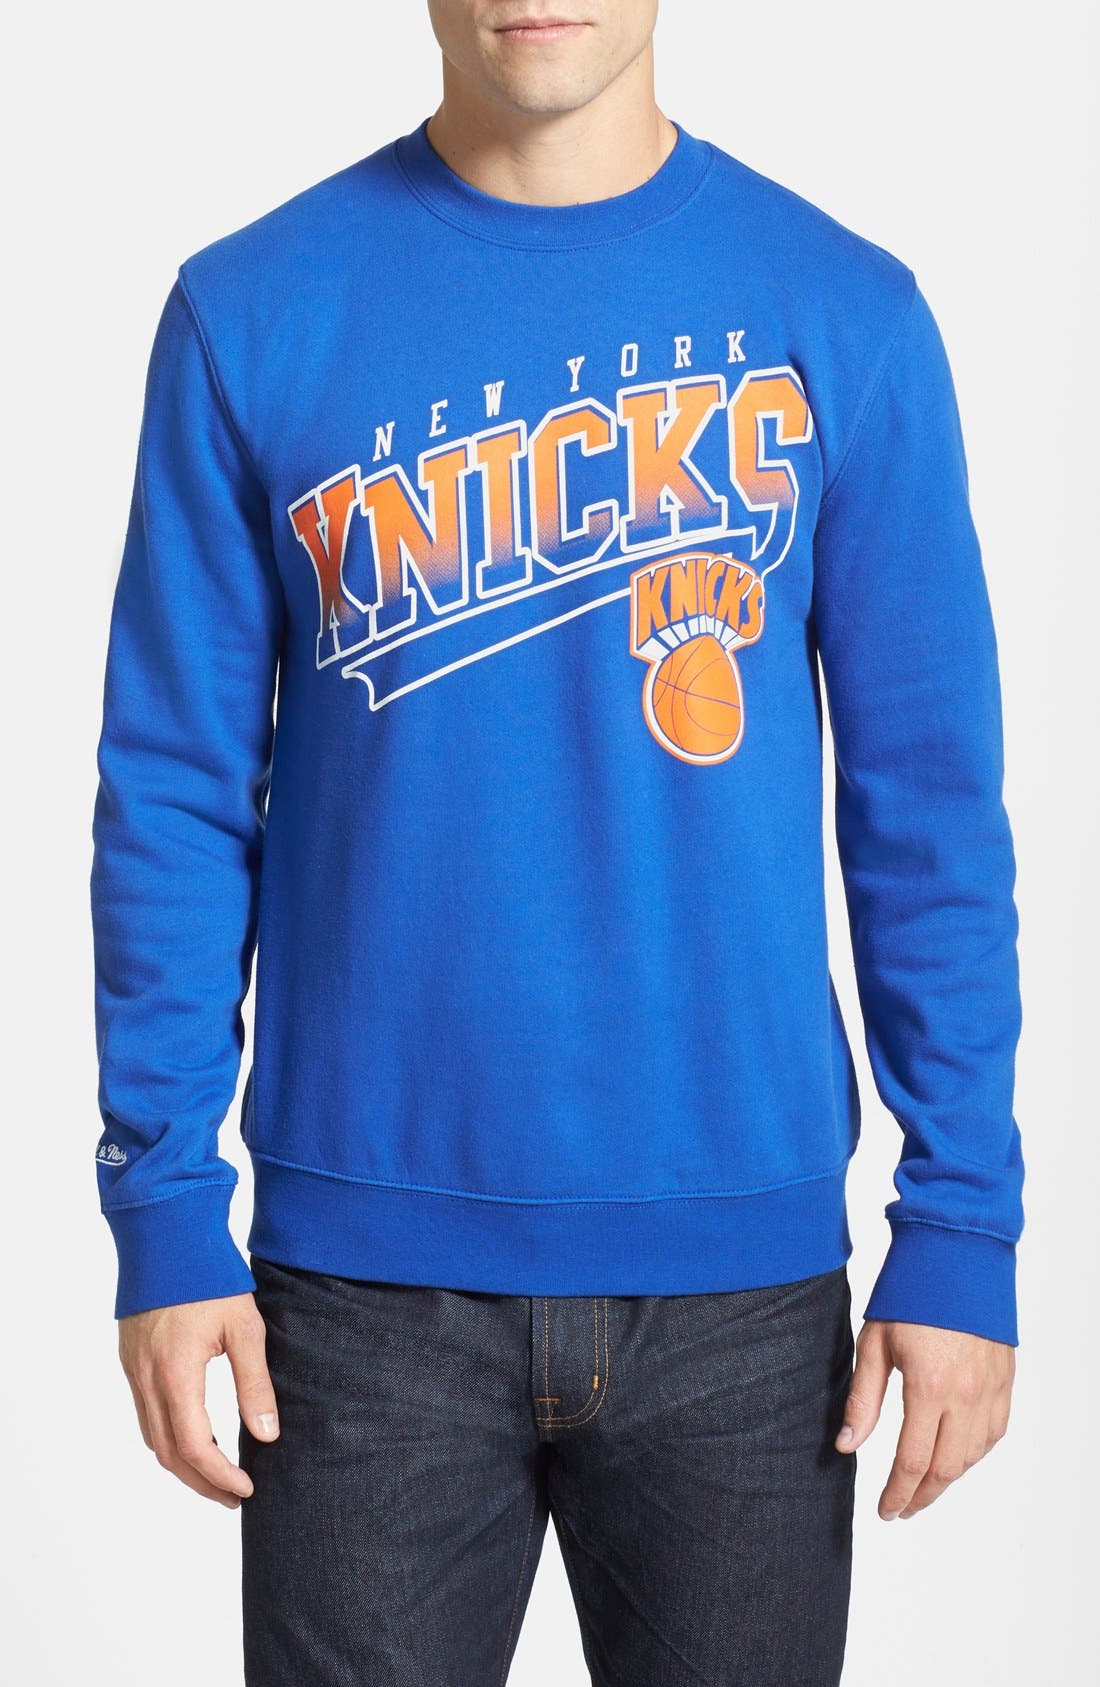 Knicks Crewneck Sweatshirt Flash Sales, 56% OFF | www.dalmar.it